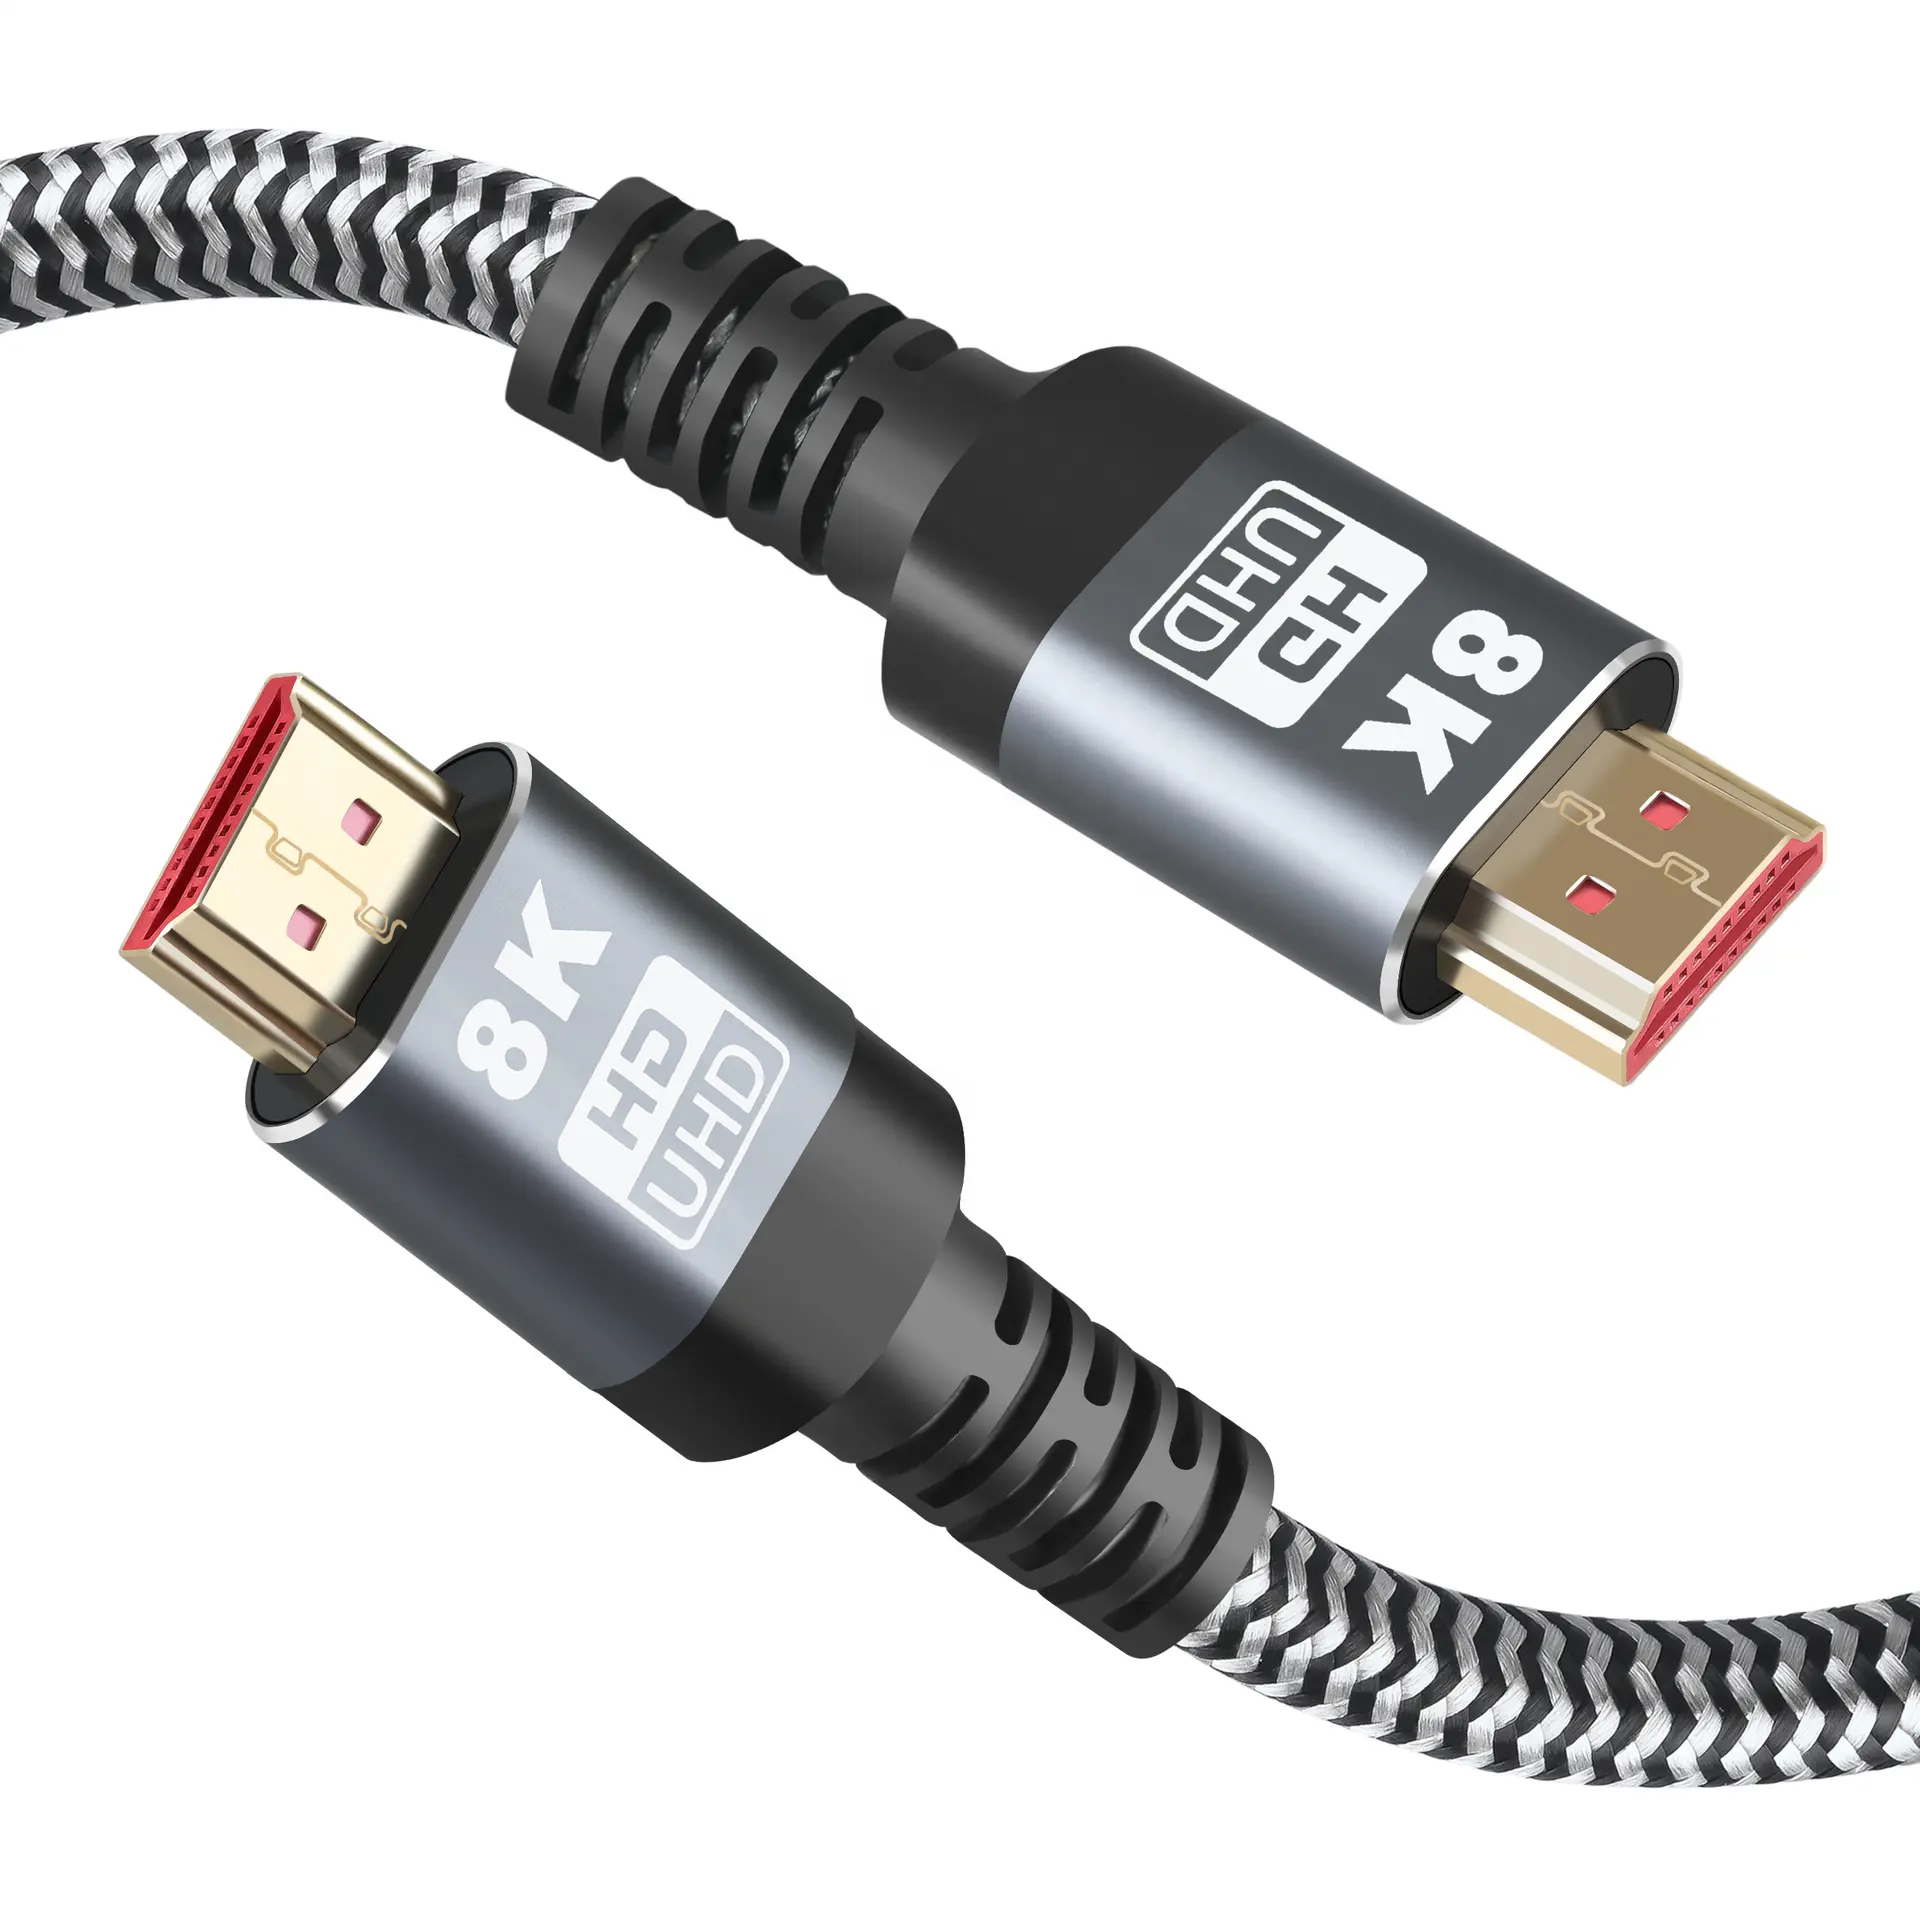 HDMI Adopter sertifikalı HDMI ürünleri çıplak bakır altın 3D 4K 8K TV yeni Ultra yüksek hızlı HDMI kablosu etiket ile